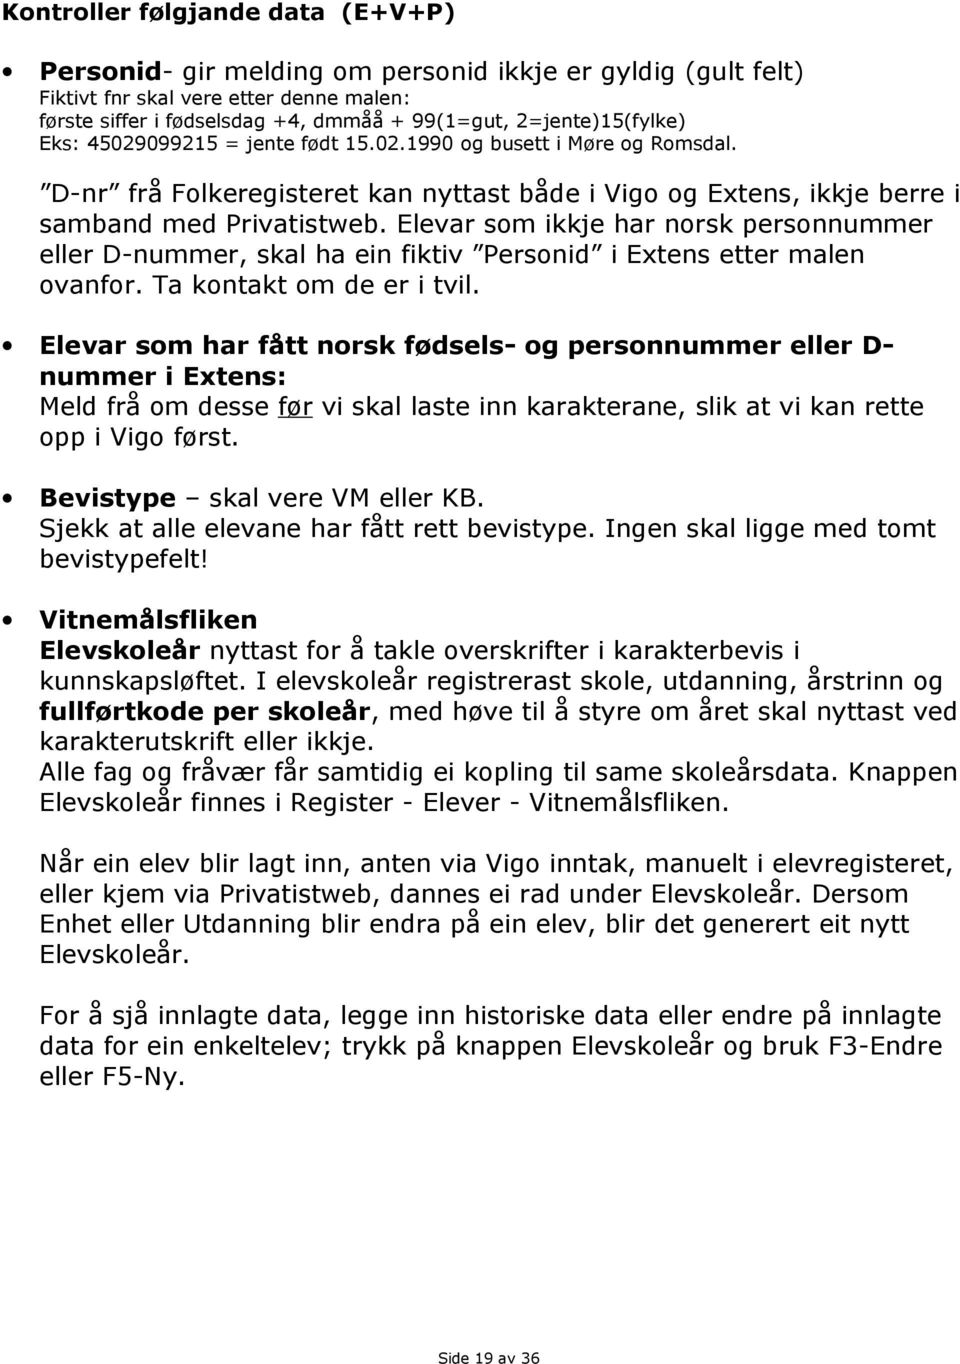 Elevar som ikkje har norsk personnummer eller D-nummer, skal ha ein fiktiv Personid i Extens etter malen ovanfor. Ta kontakt om de er i tvil.